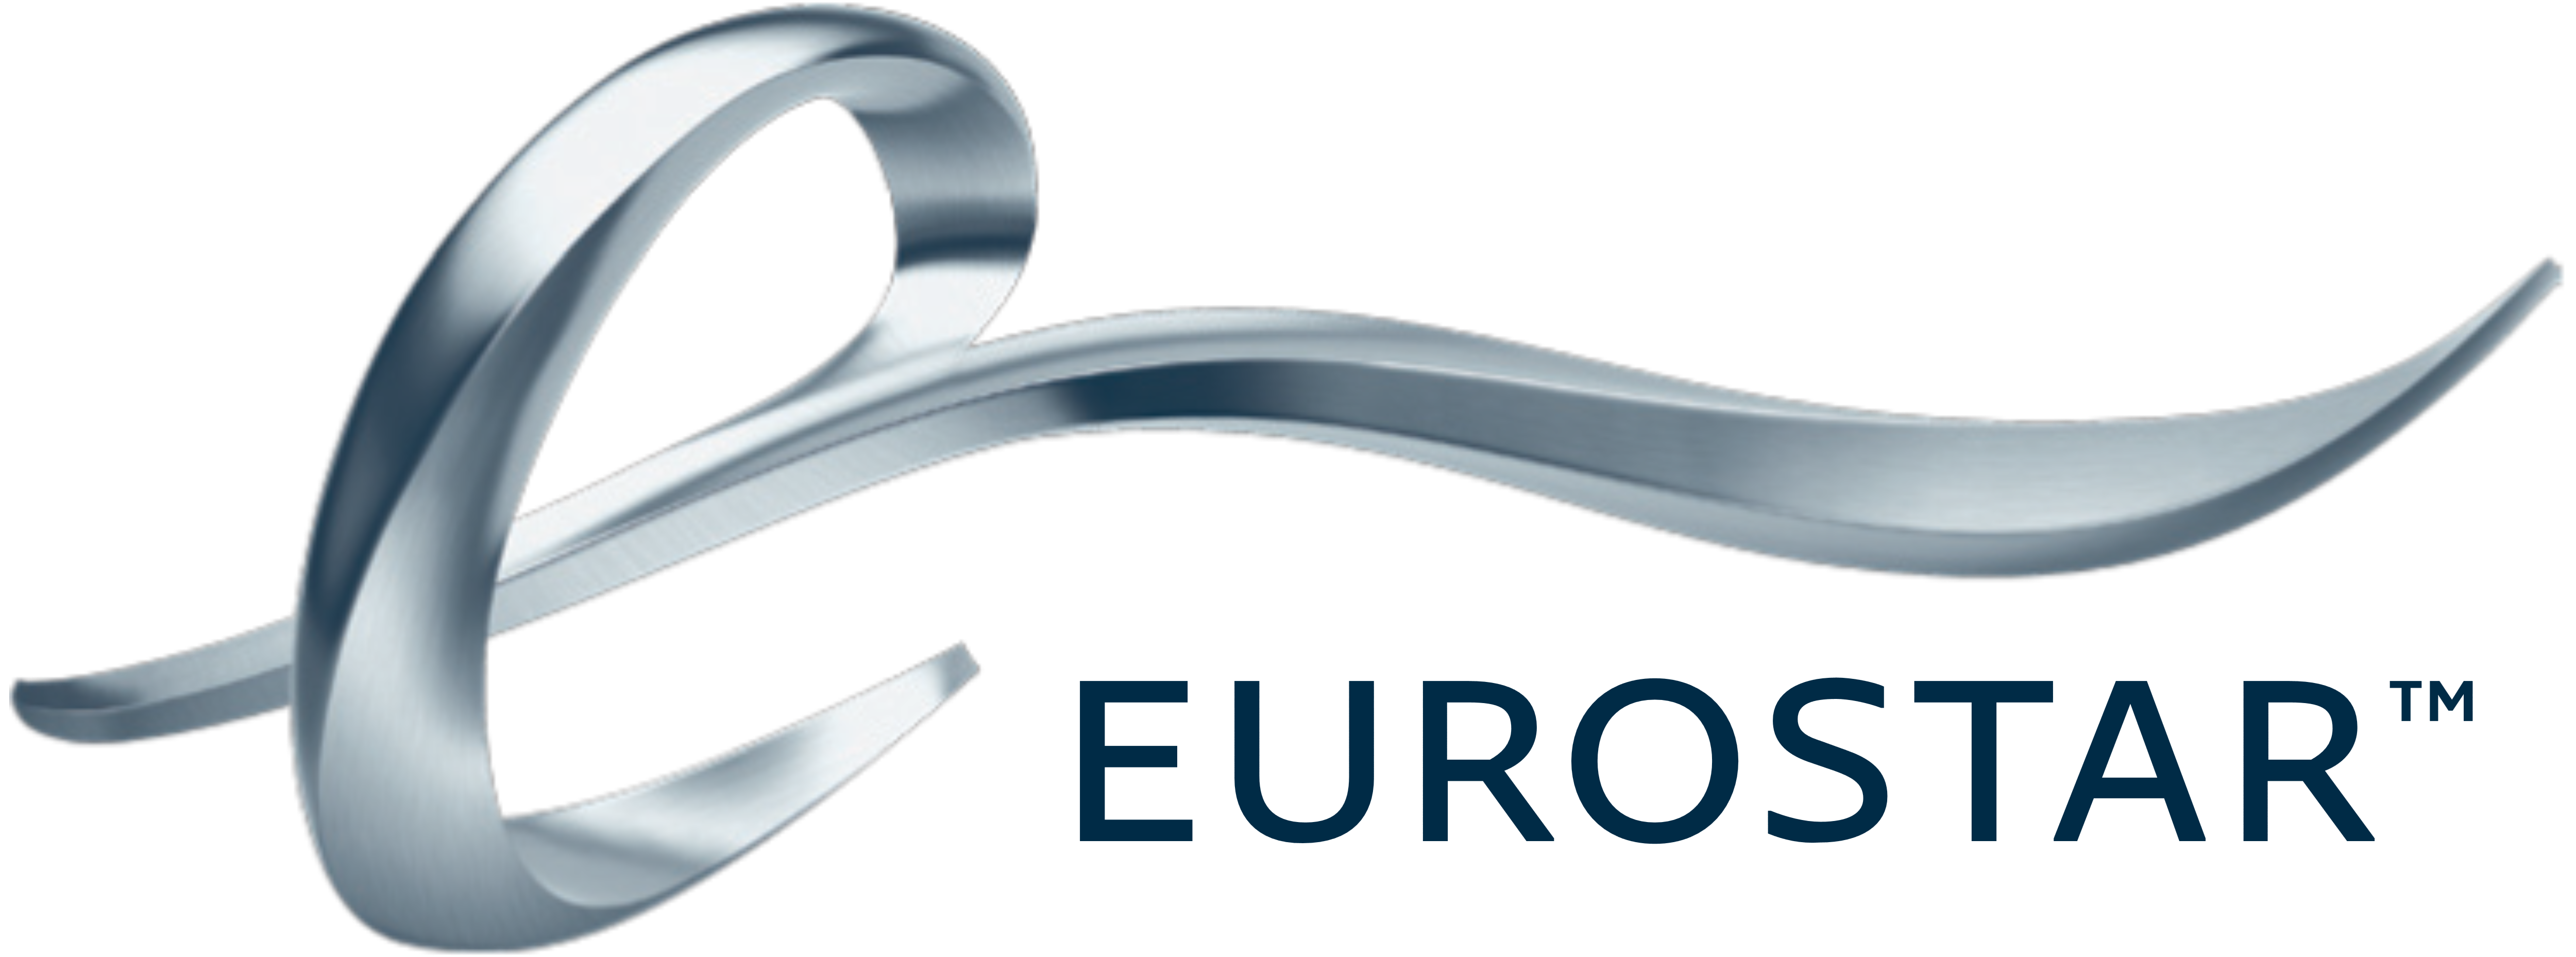 Eurostar – Logos Download